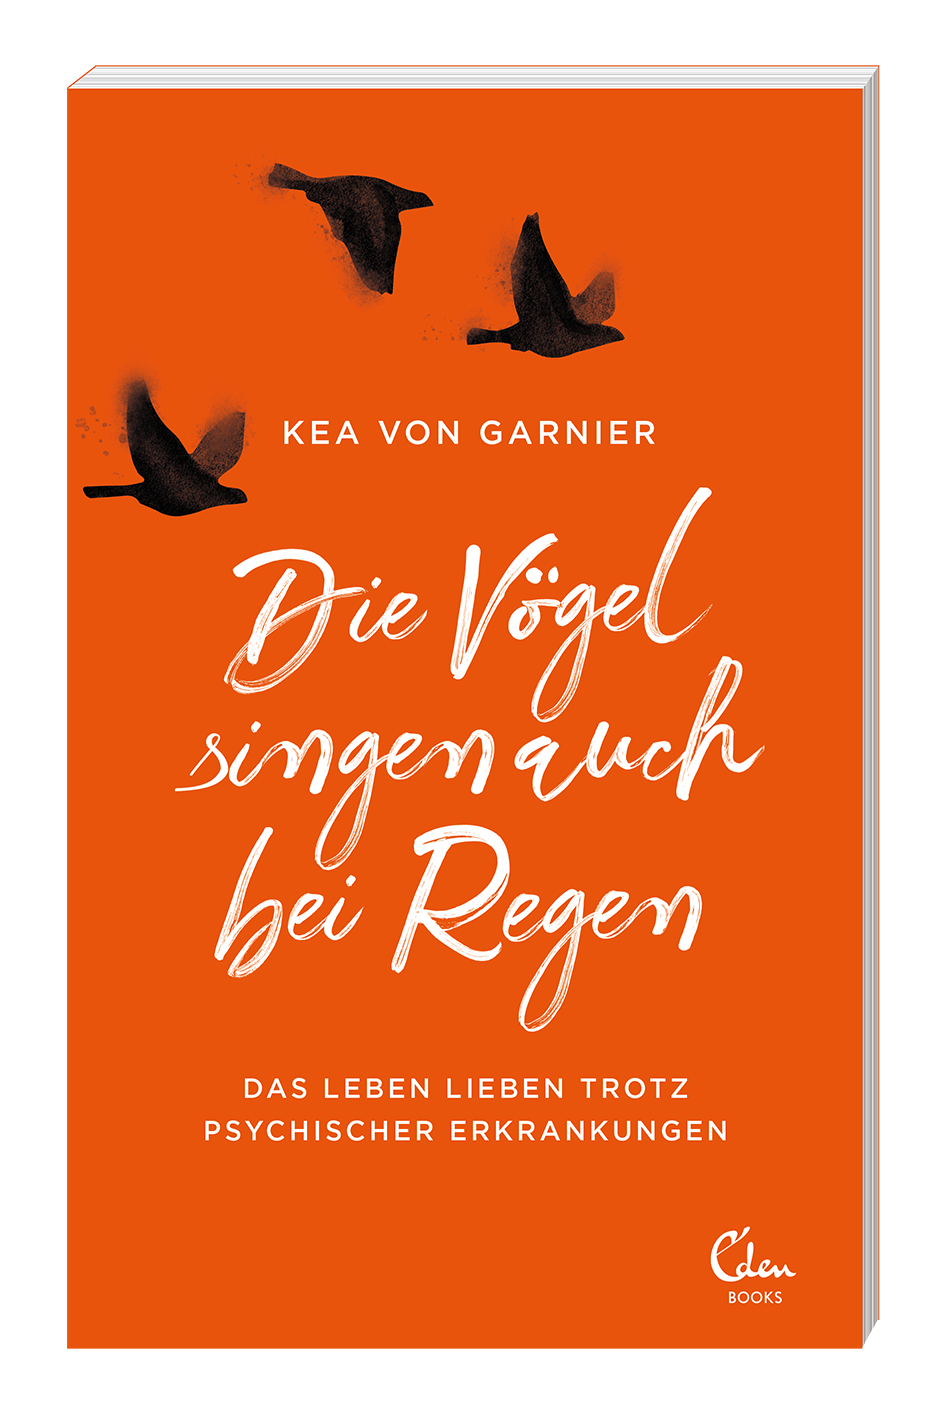 Eden Books_von Garnier_Die Voegel singen_